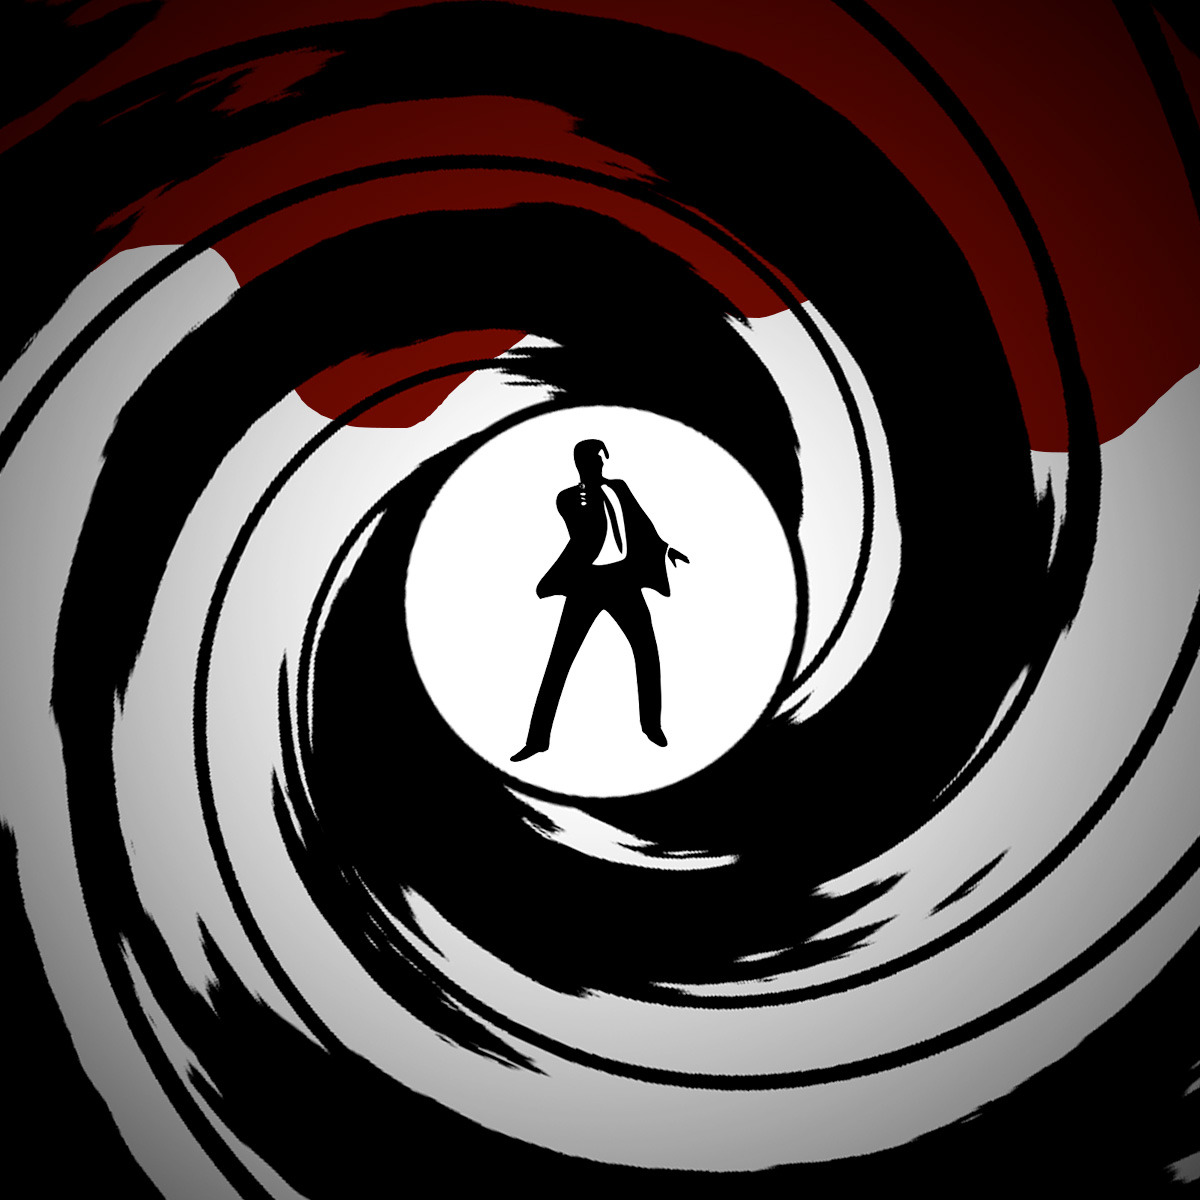 james bond 007 wallpaper,kreis,fotografie,schwarz und weiß,grafikdesign,grafik